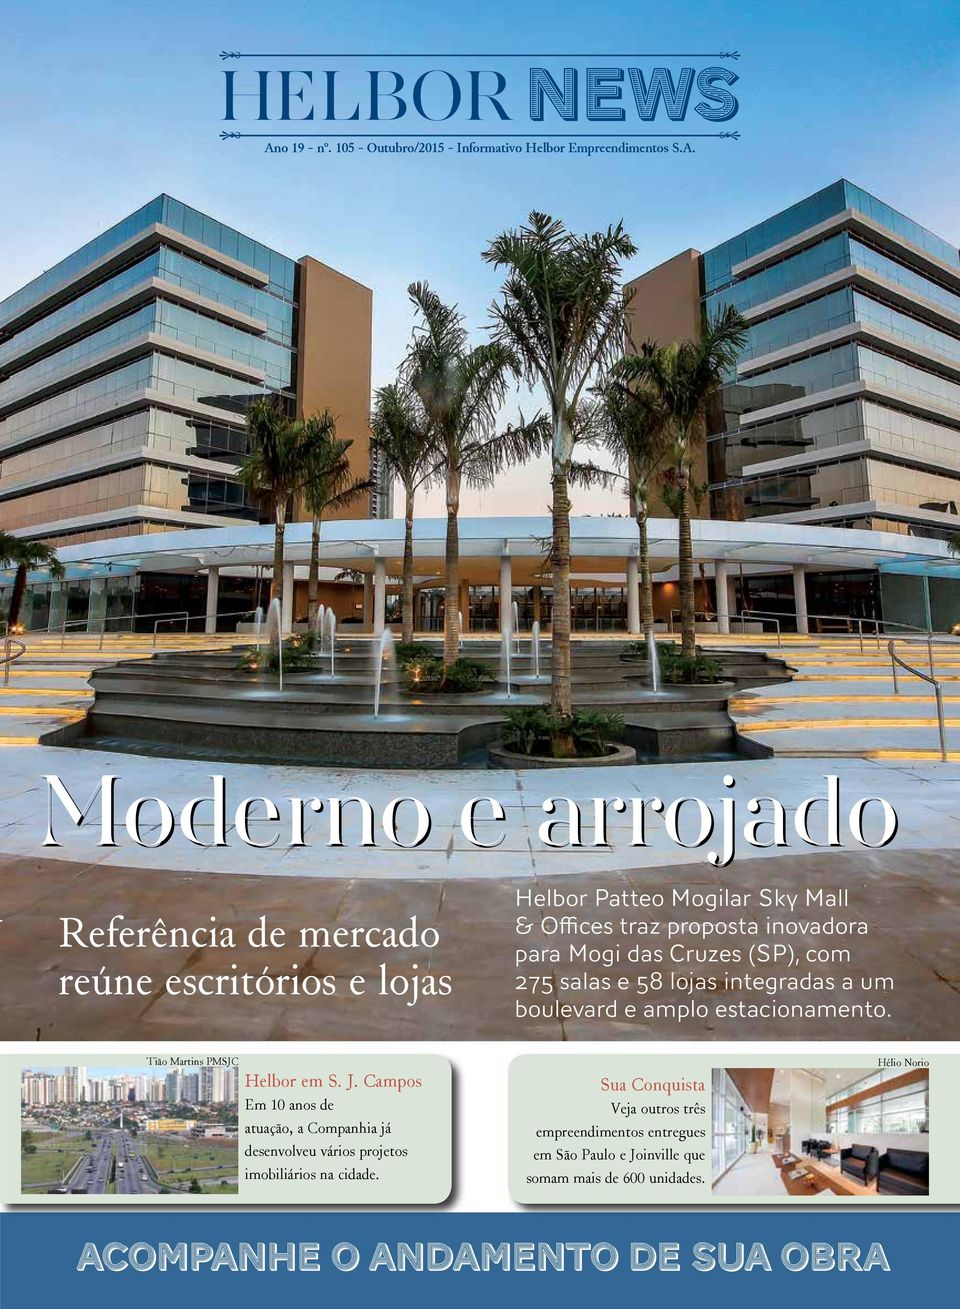 estacionamento. Tião Martins PMSJC Helbor em S. J. Campos Em 10 anos de atuação, a Companhia já desenvolveu vários projetos imobiliários na cidade.